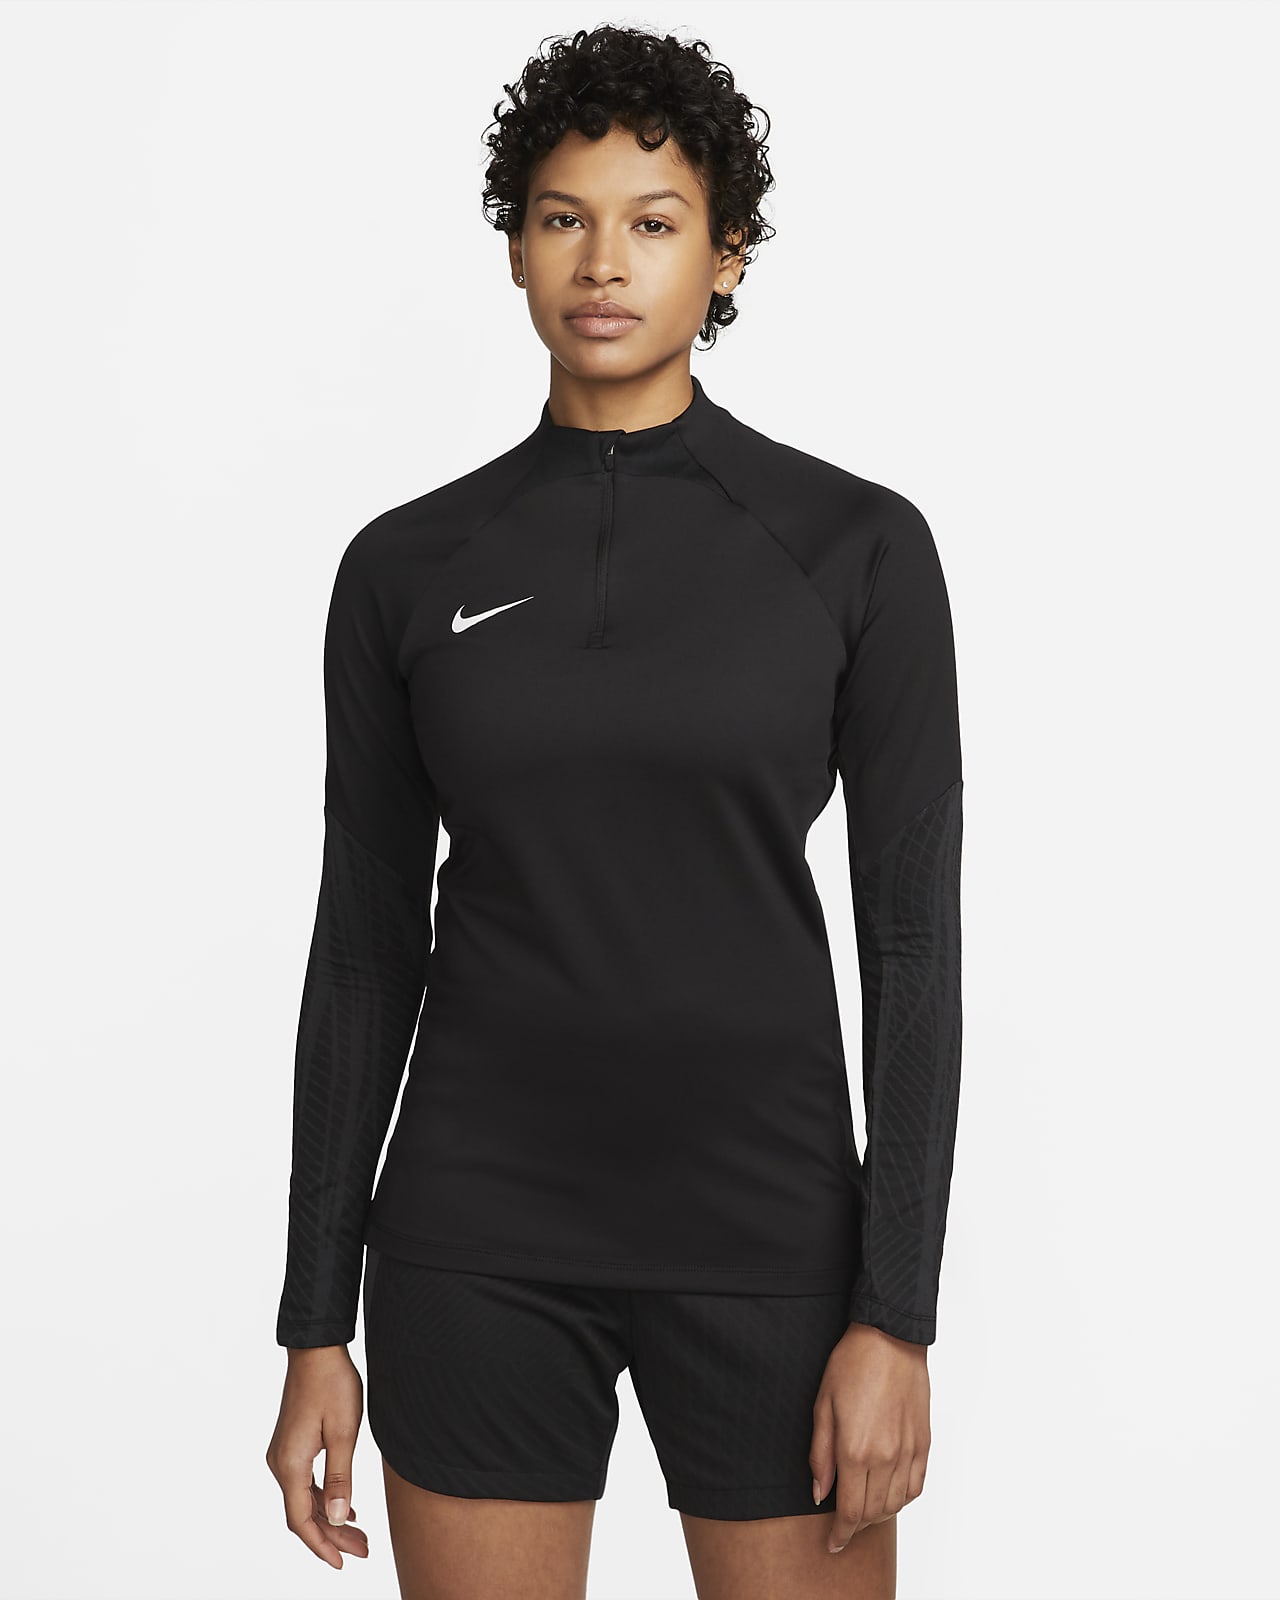 Schuldenaar ontrouw Knop Nike Dri-FIT Strike Women's Long-Sleeve Drill Top. Nike.com